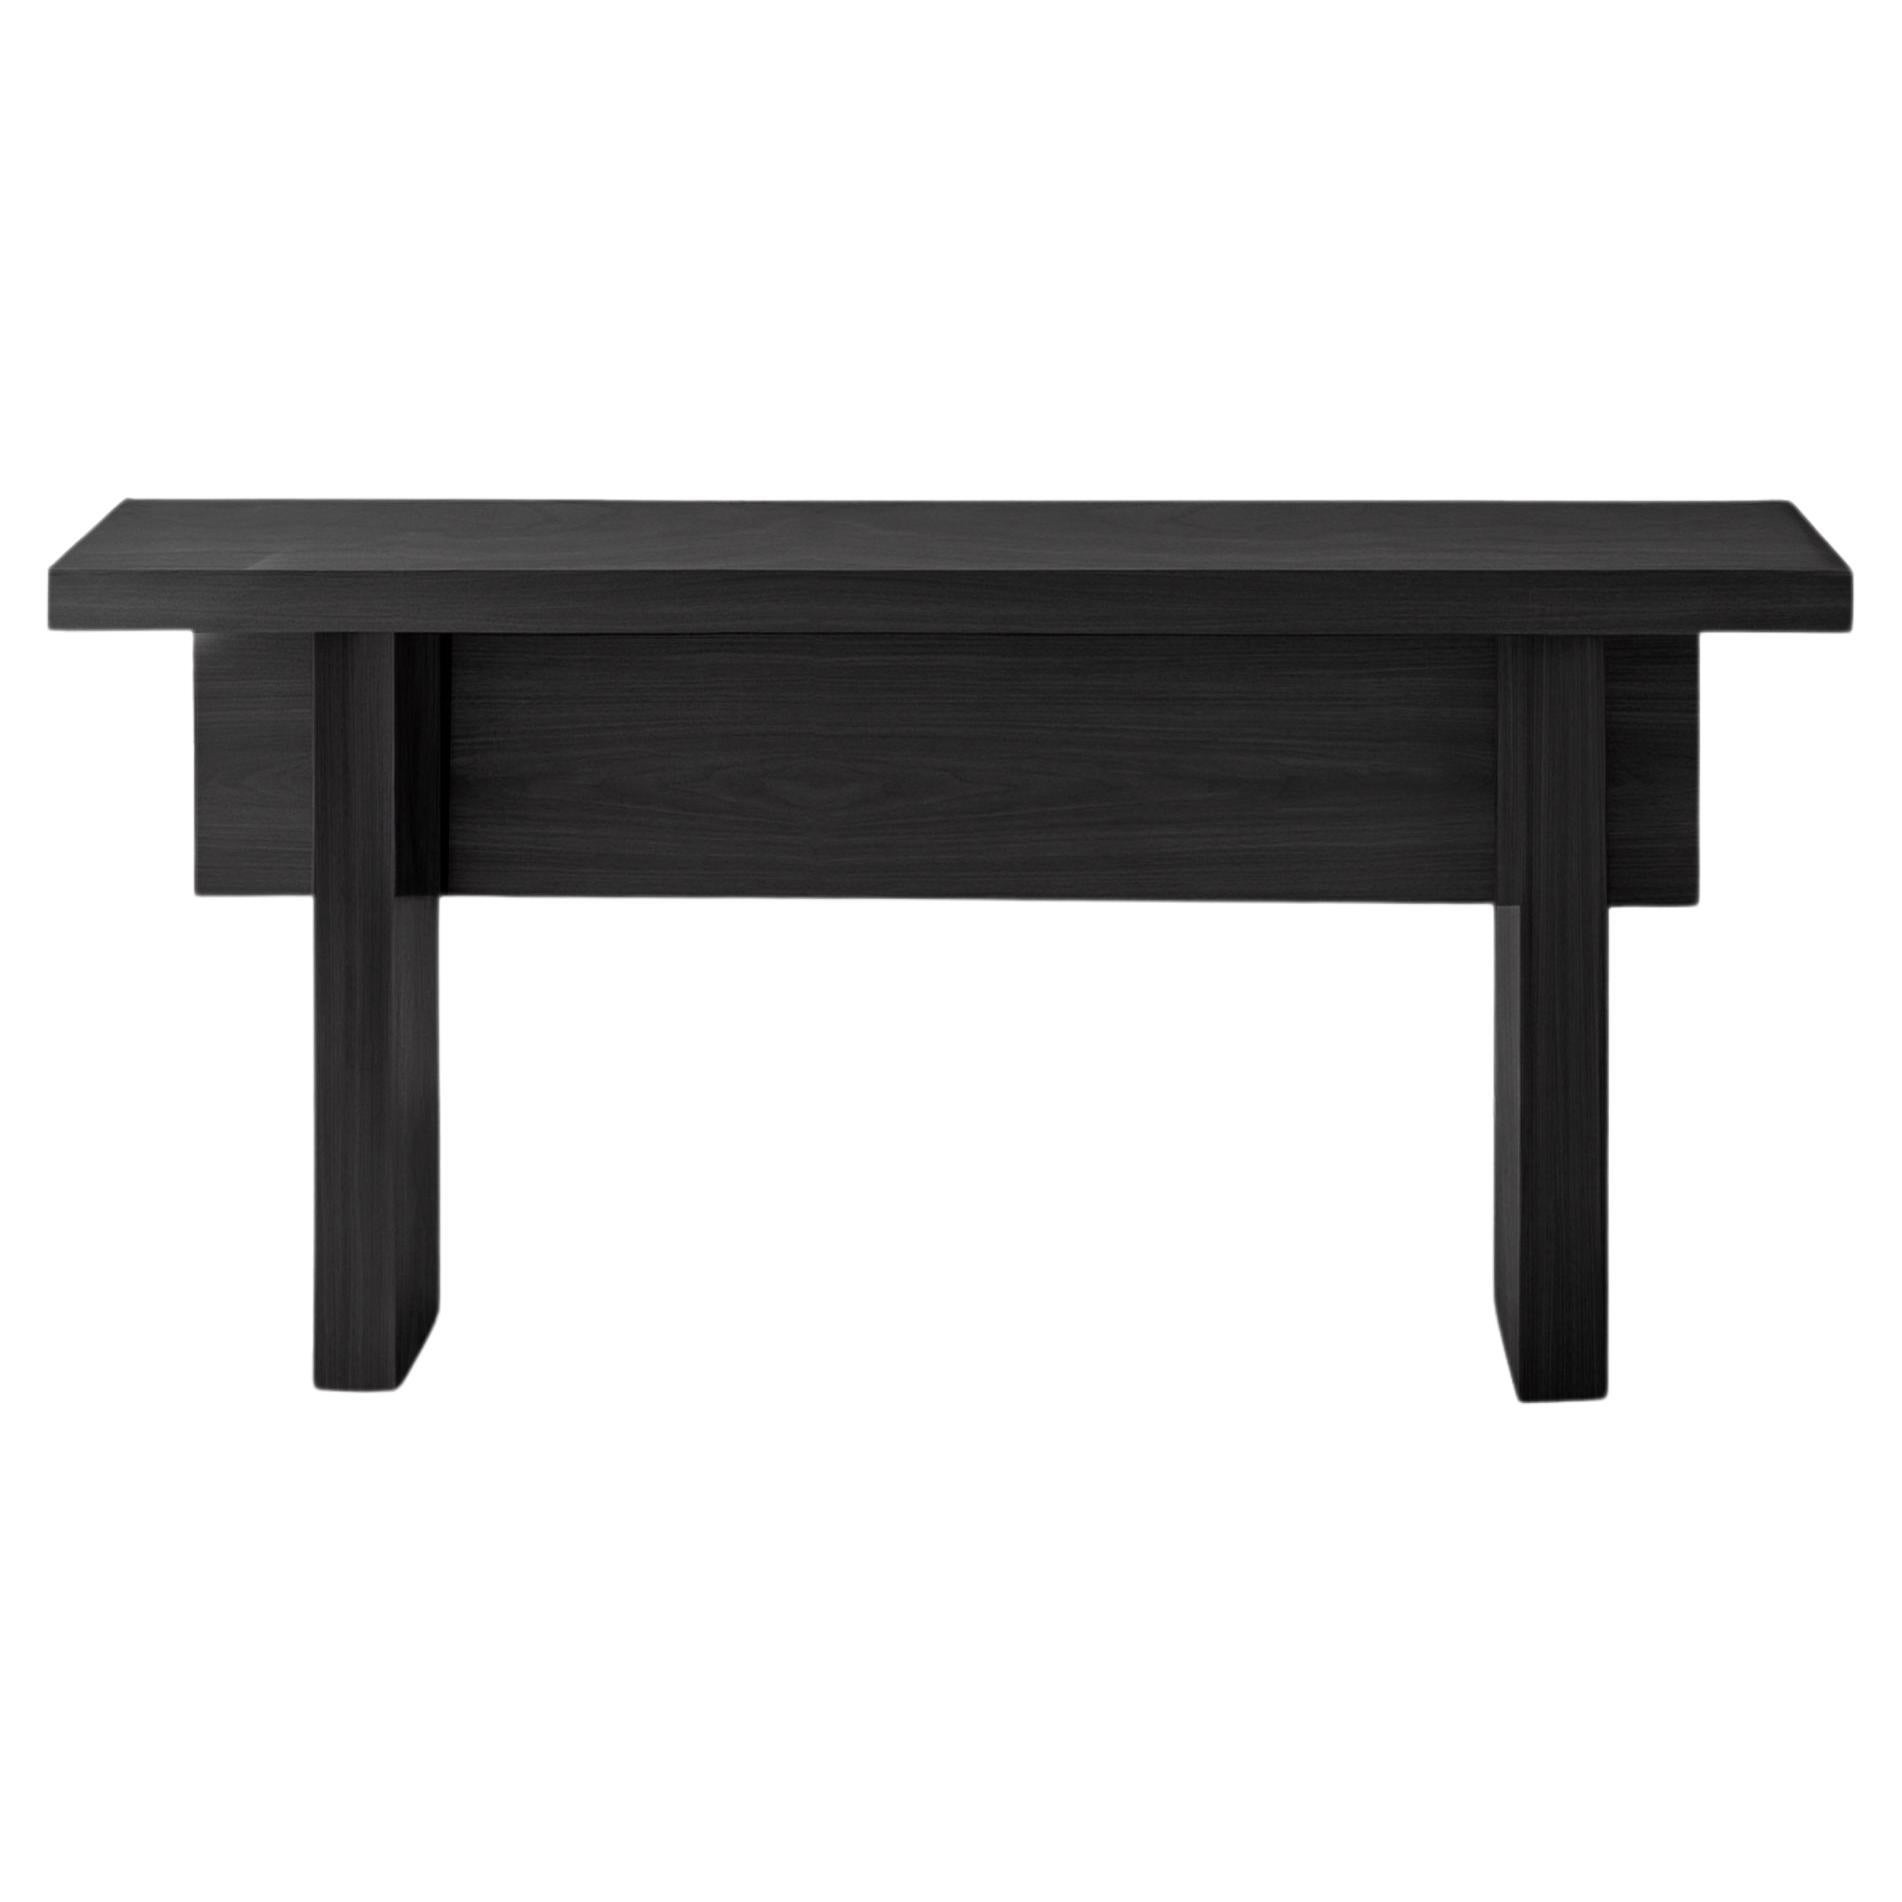 Table console minimaliste, buffet en bois de chêne teinté noir, console étroite